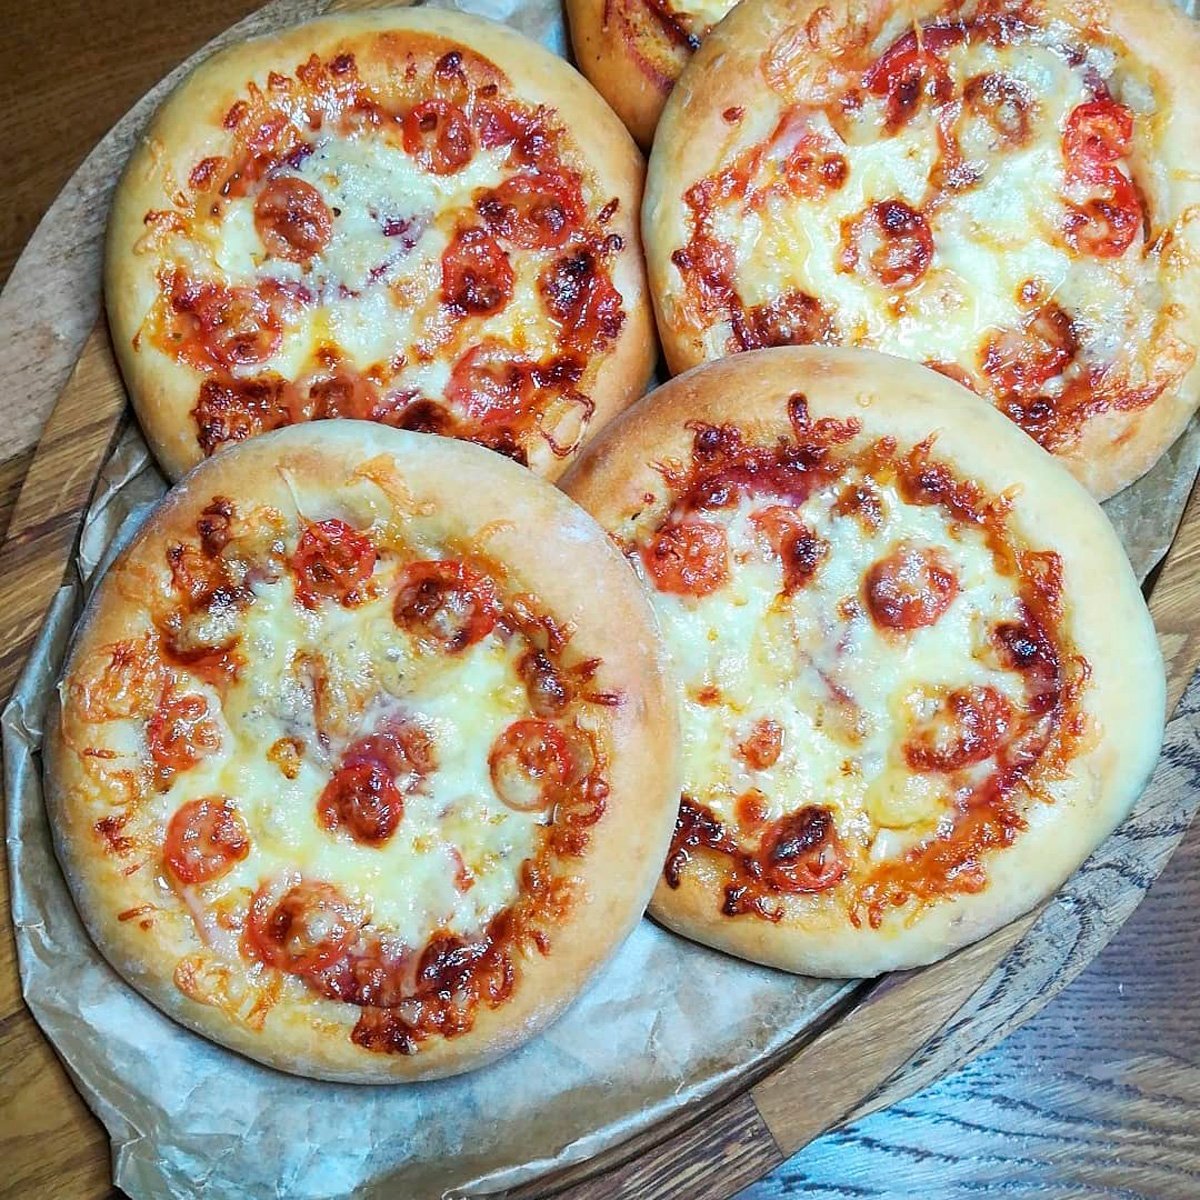 мини пиццы в духовке из дрожжевого теста в домашних условиях рецепт с фото пошаговый фото 3